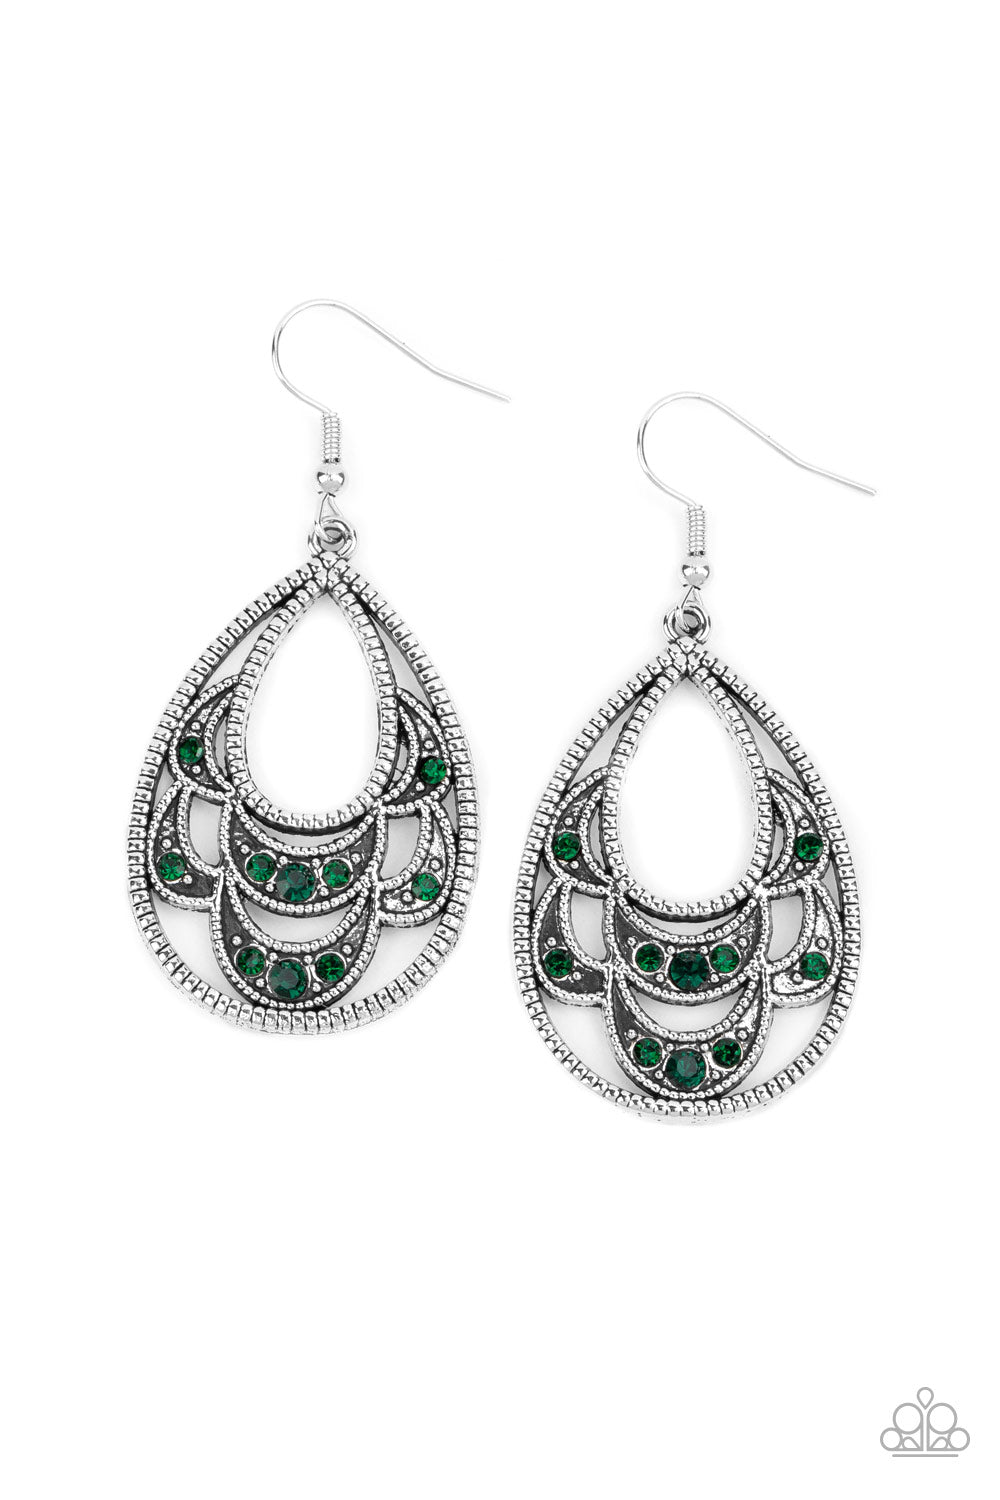 Malibu Macrame - green - Paparazzi earrings